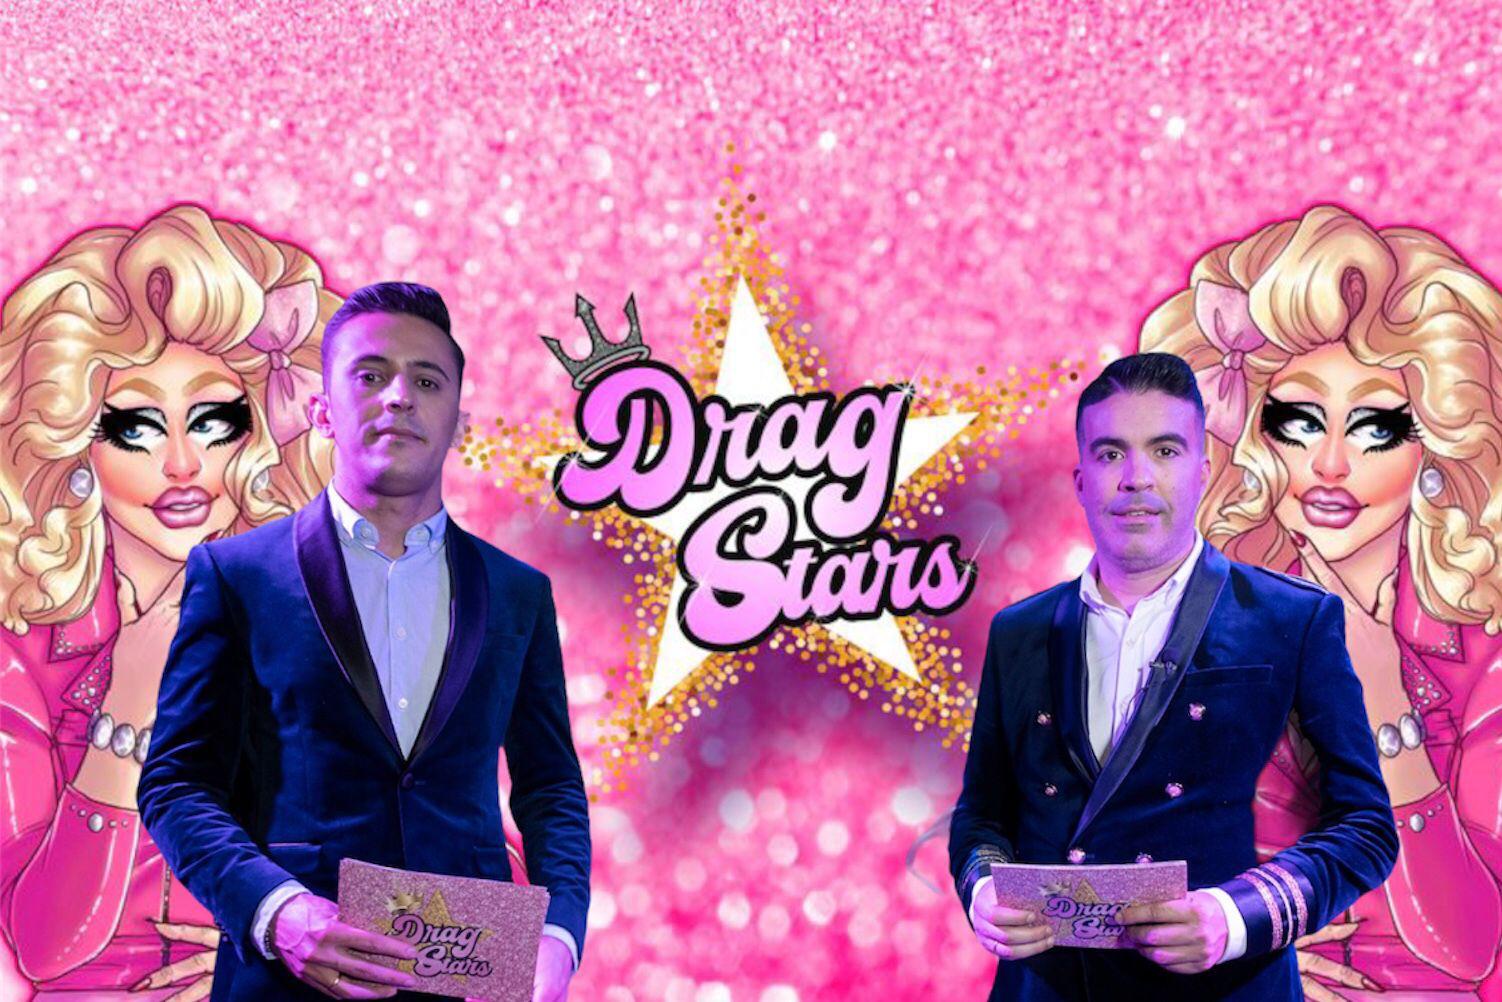 El programa Drag Stars Spain vuelve de la mano de Mauricio Severo